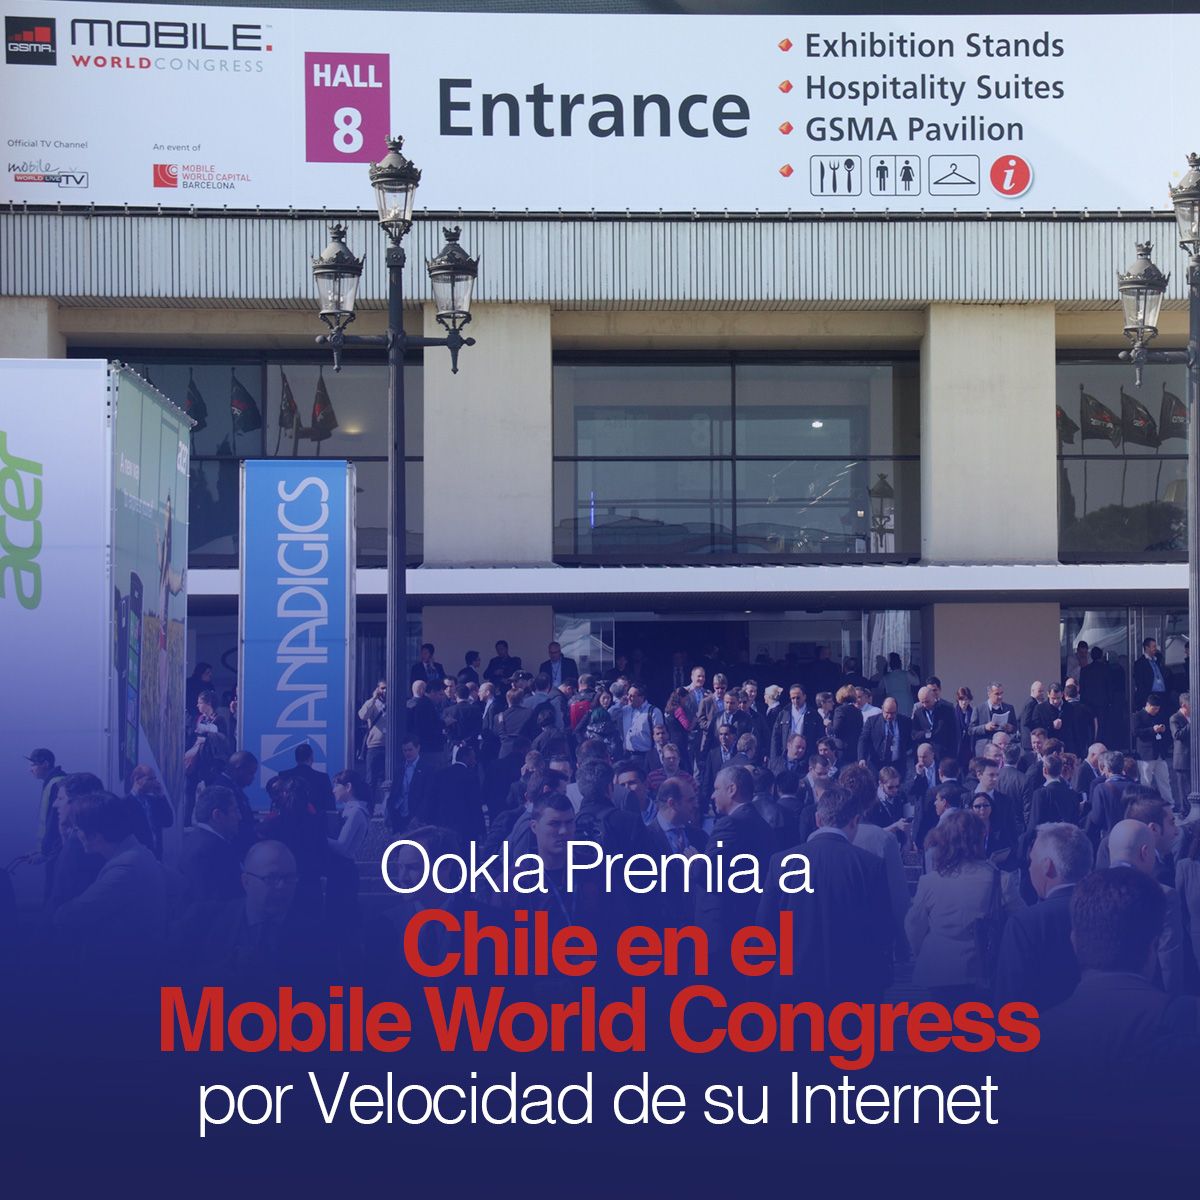 Ookla Premia a Chile en el Mobile World Congress por Velocidad de su Internet